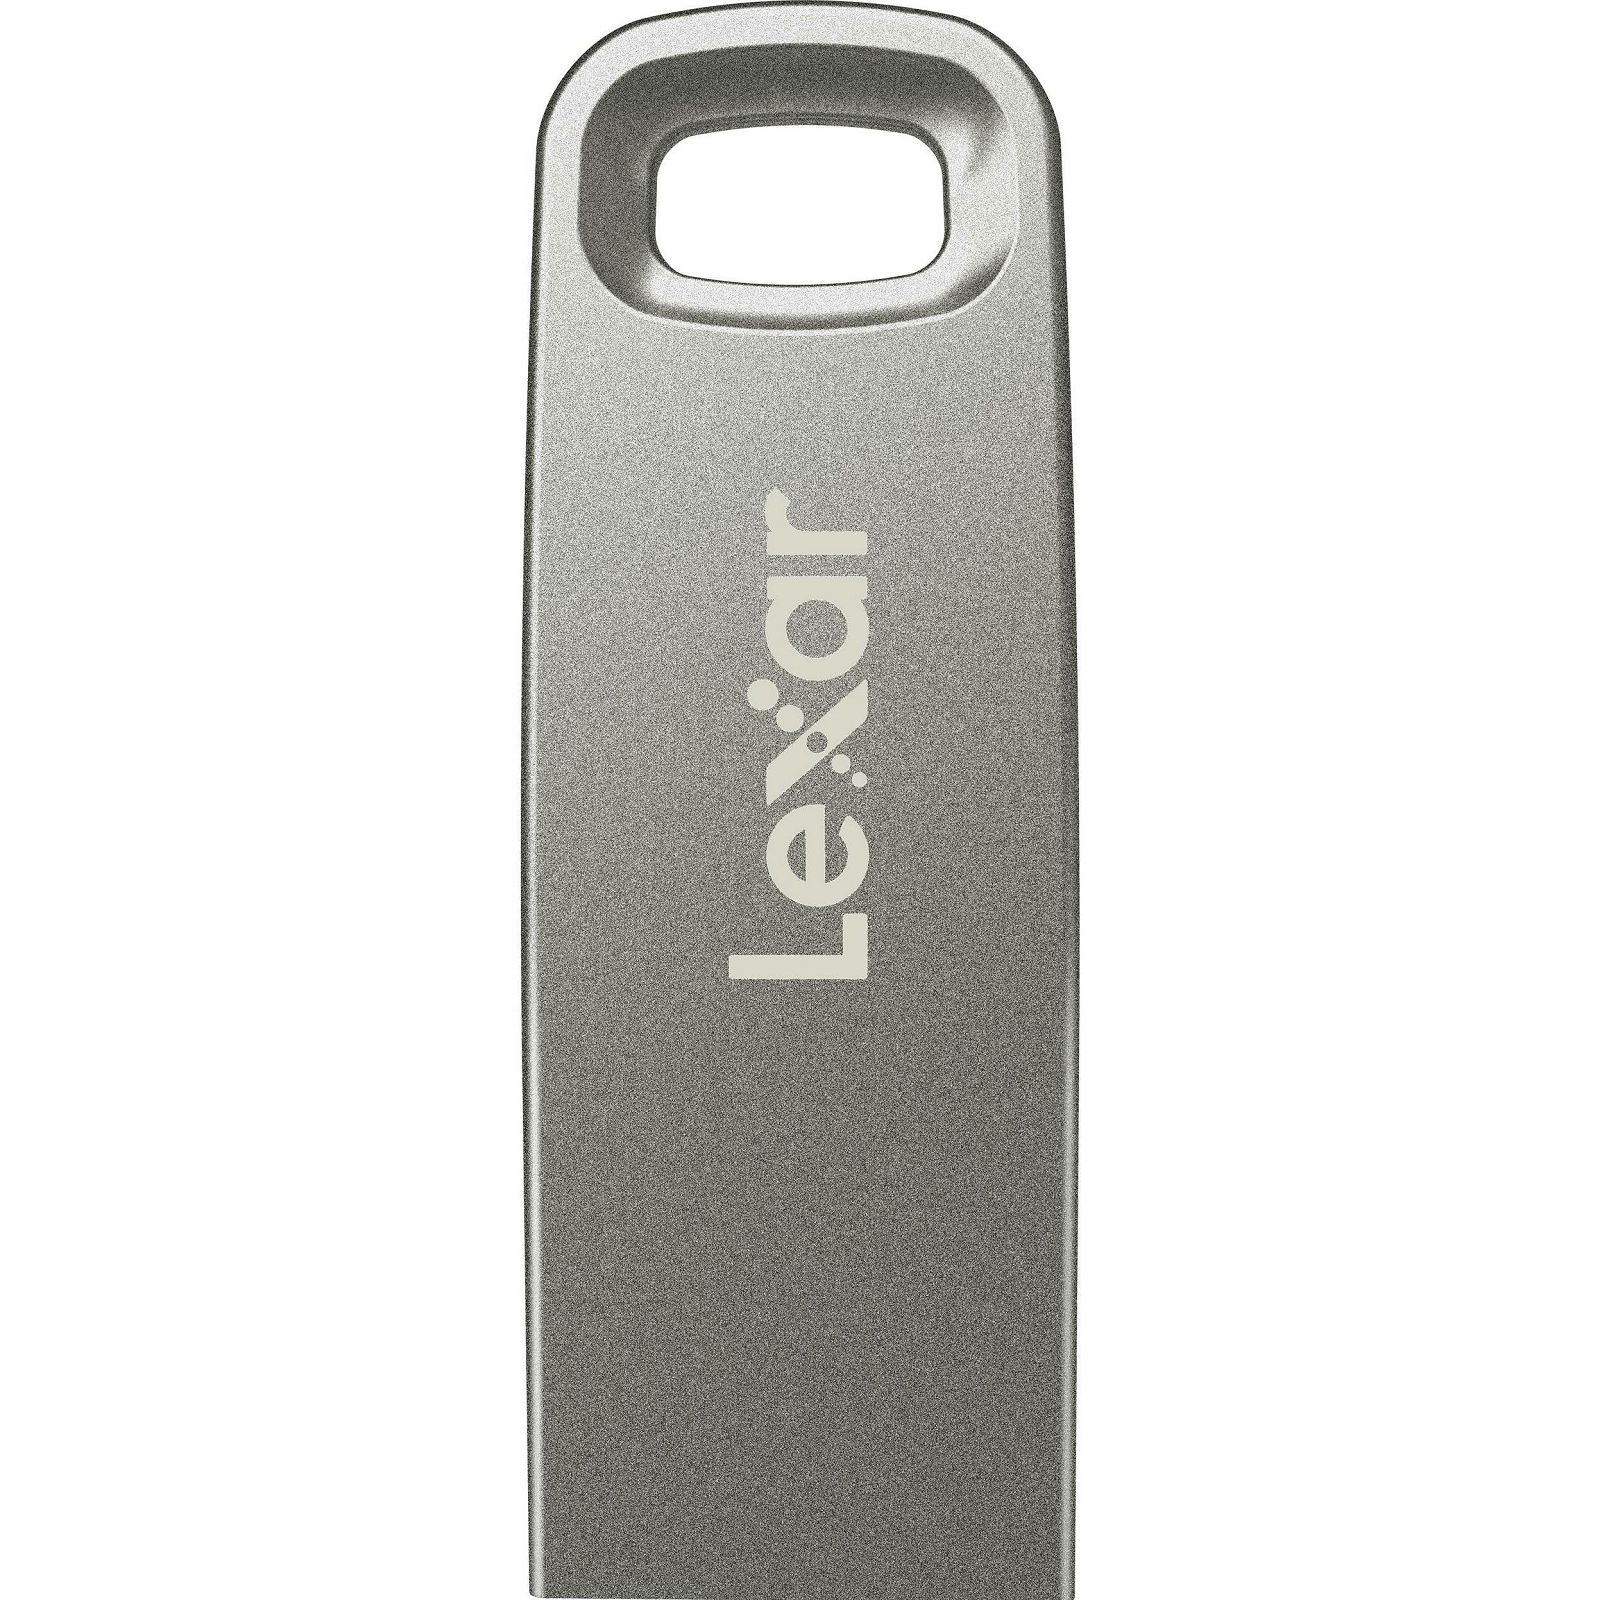 Lexar JumpDrive M45 32GB USB 3.1 Silver Housing 250MB/s memorija (LJDM45-32GABSL)